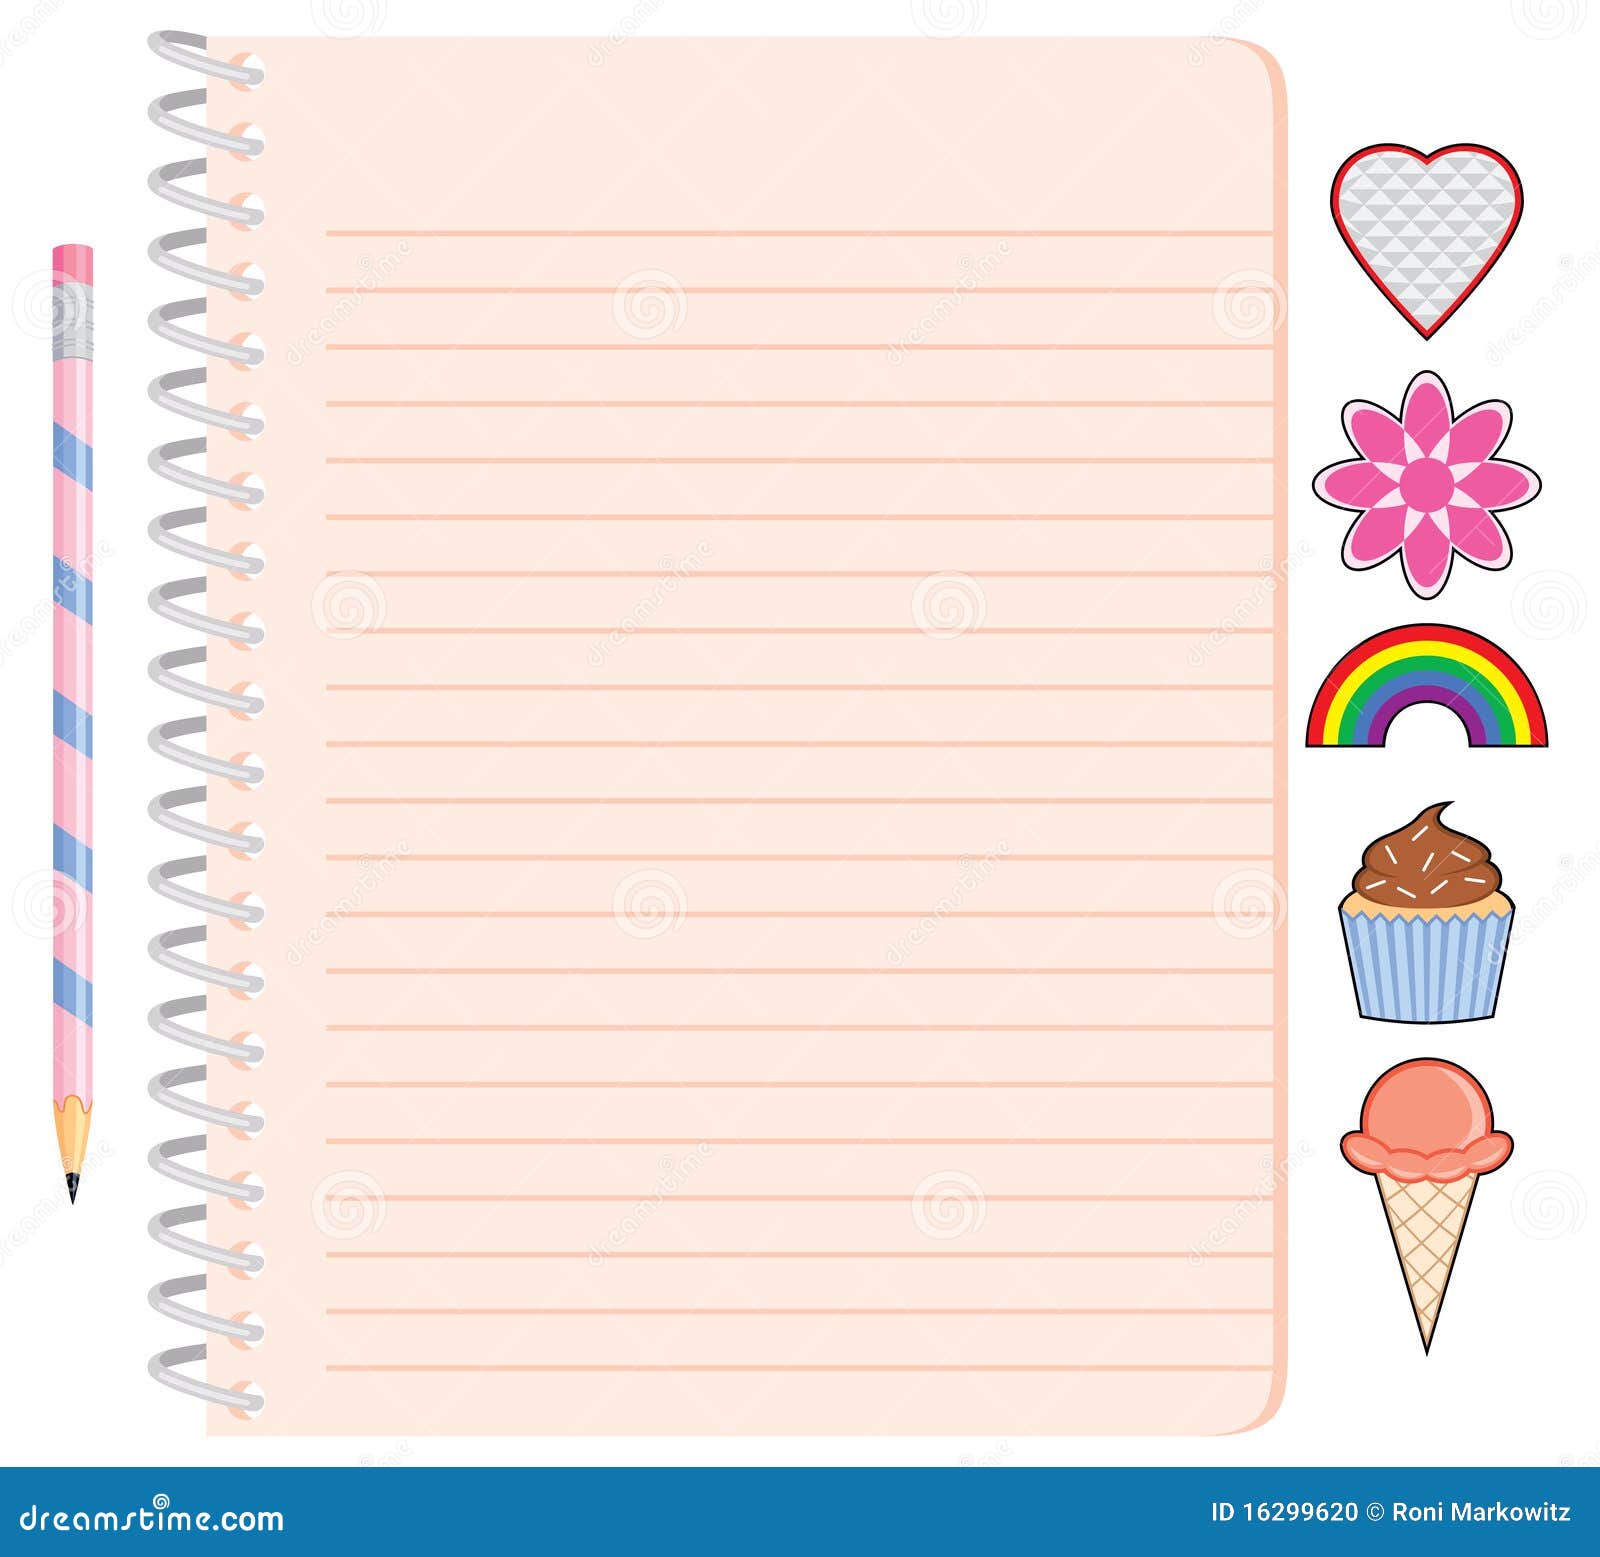 Caderno espiral da menina com lápis e etiquetas. Um caderno espiral bonito com lápis e etiquetas para uma menina. As etiquetas incluem um cone de gelado do coração, da flor, do arco-íris, do queque e.